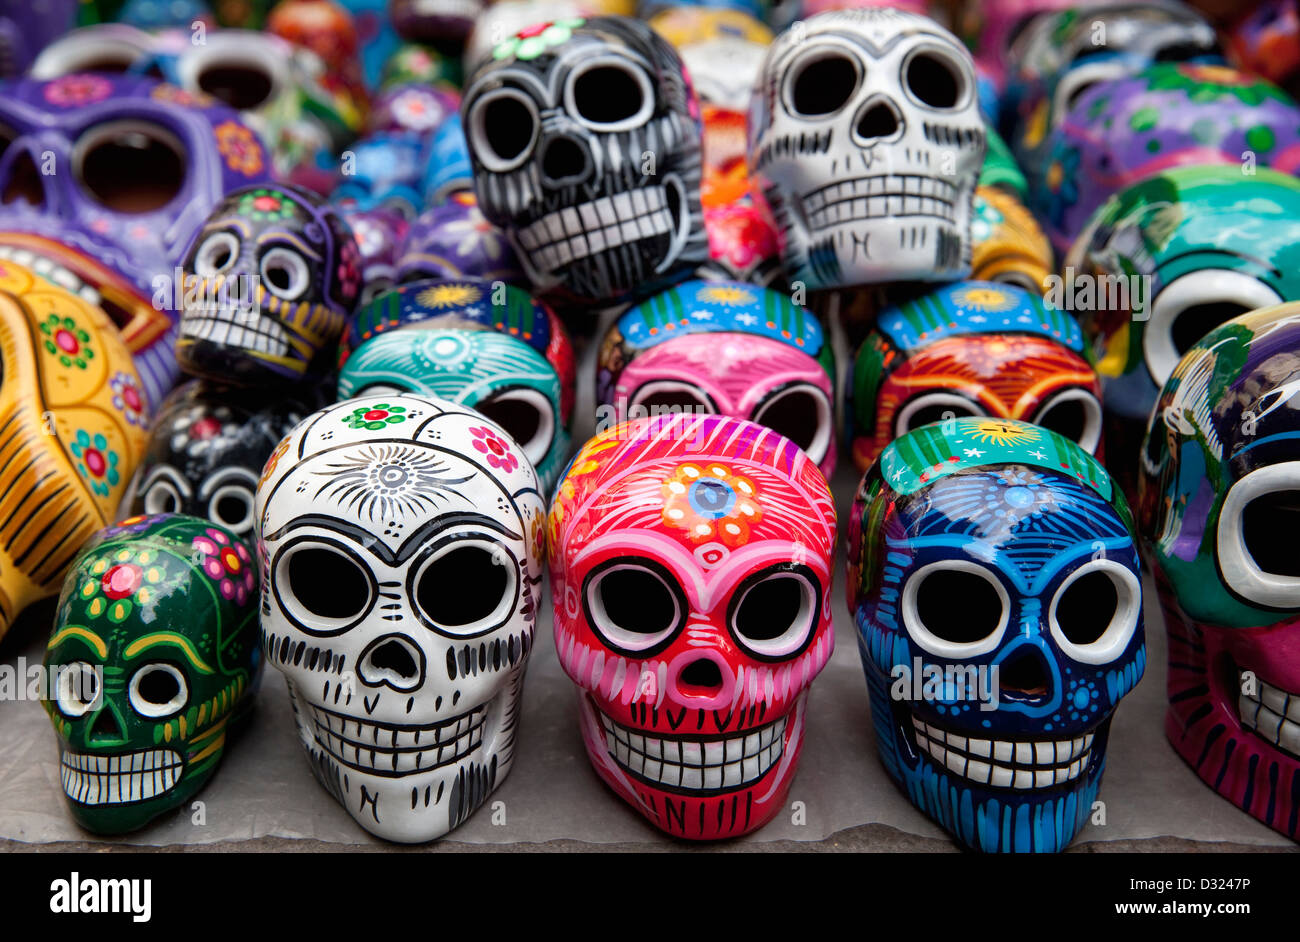 Calaveras decorativas hechas de porcelana multicolor que son recuerdos  tradicionales mexicanos